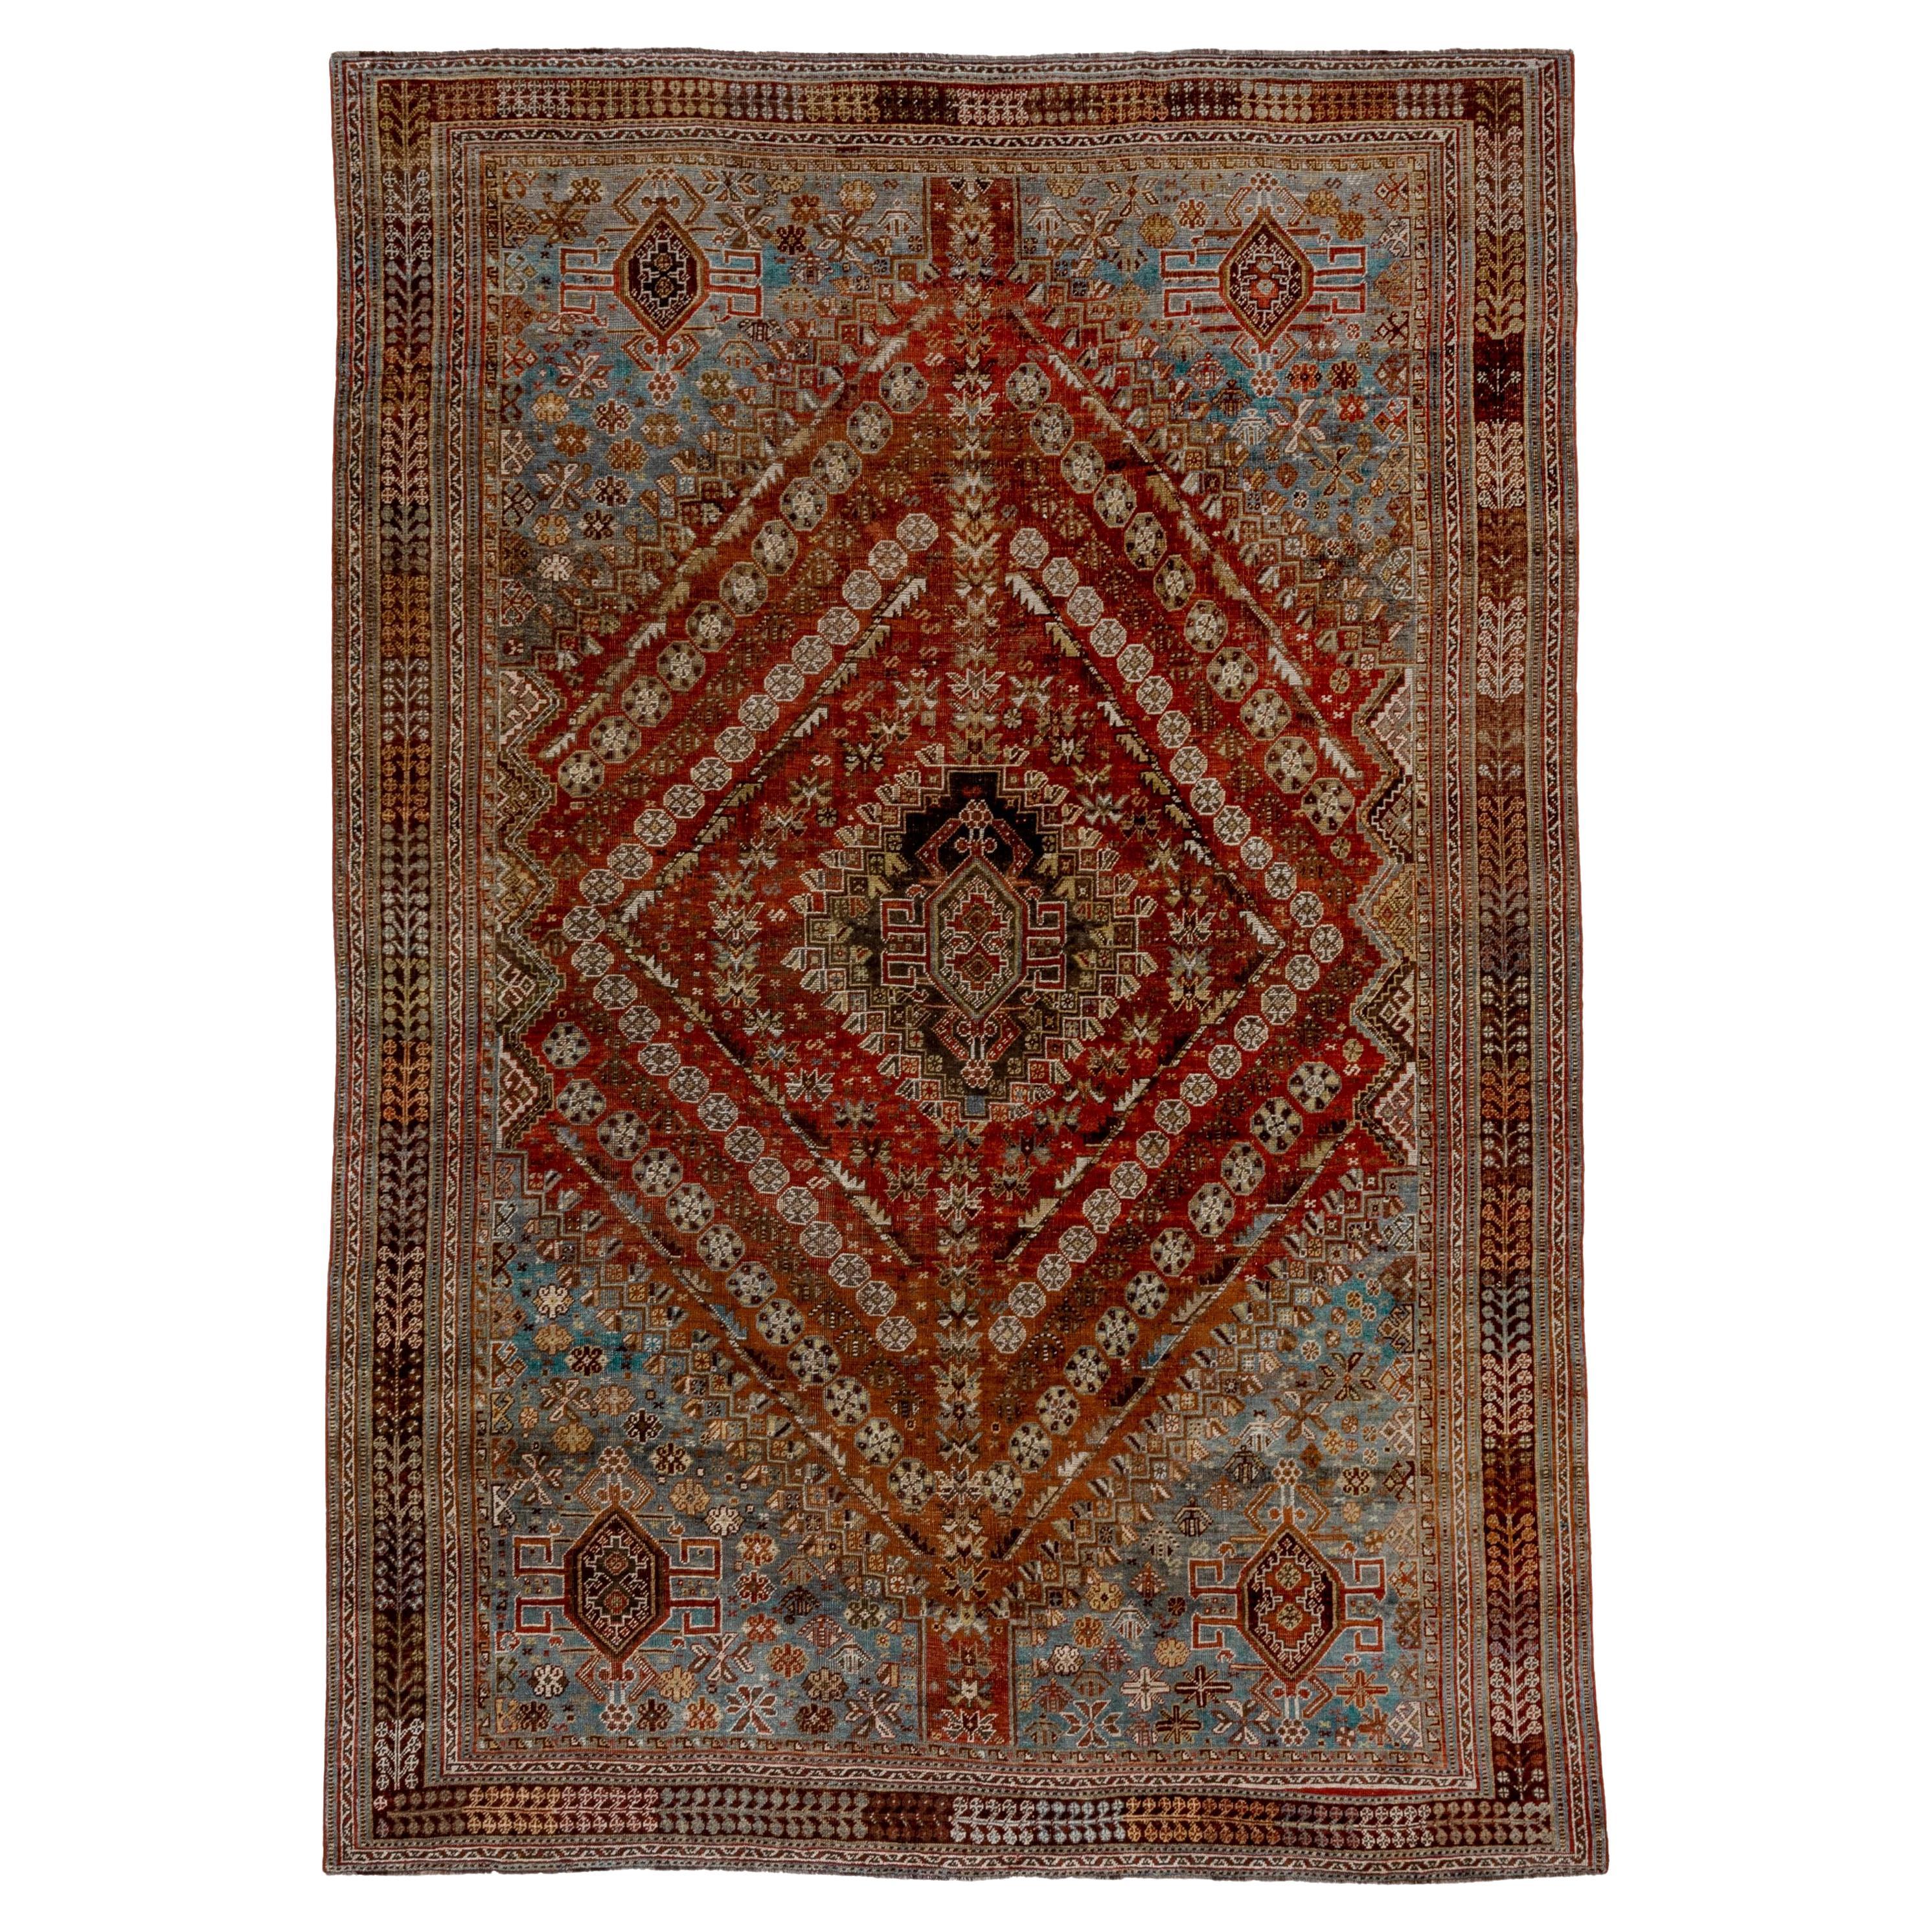 Magnifique tapis persan ancien Shiraz, fond intérieur rouille et rouge, fond extérieur bleu clair